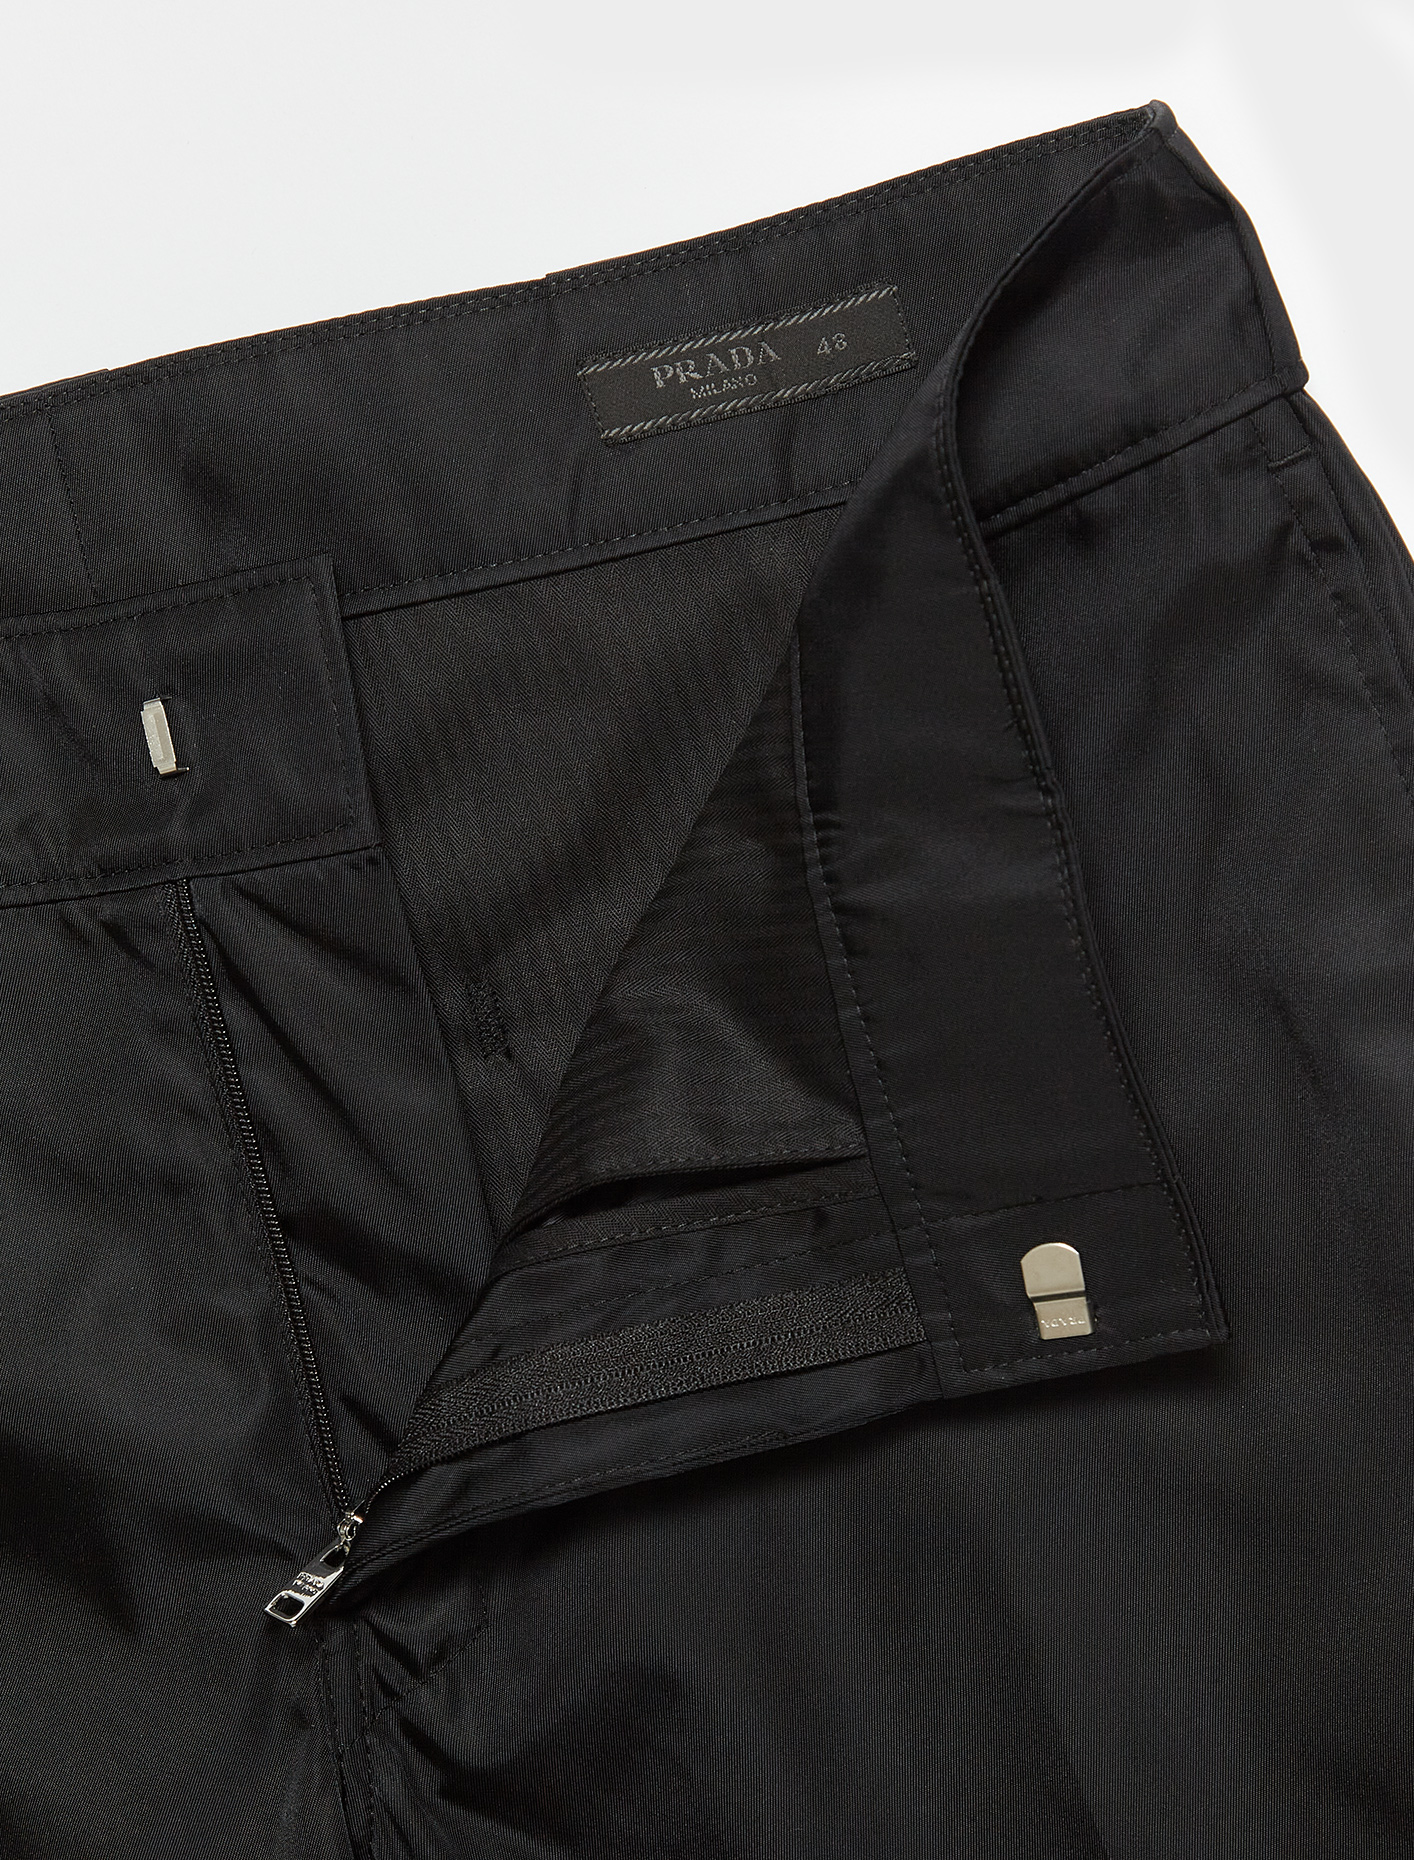 Prada Re-Nylon Trouser in Black | Voo Store Berlin | Worldwide Shipping